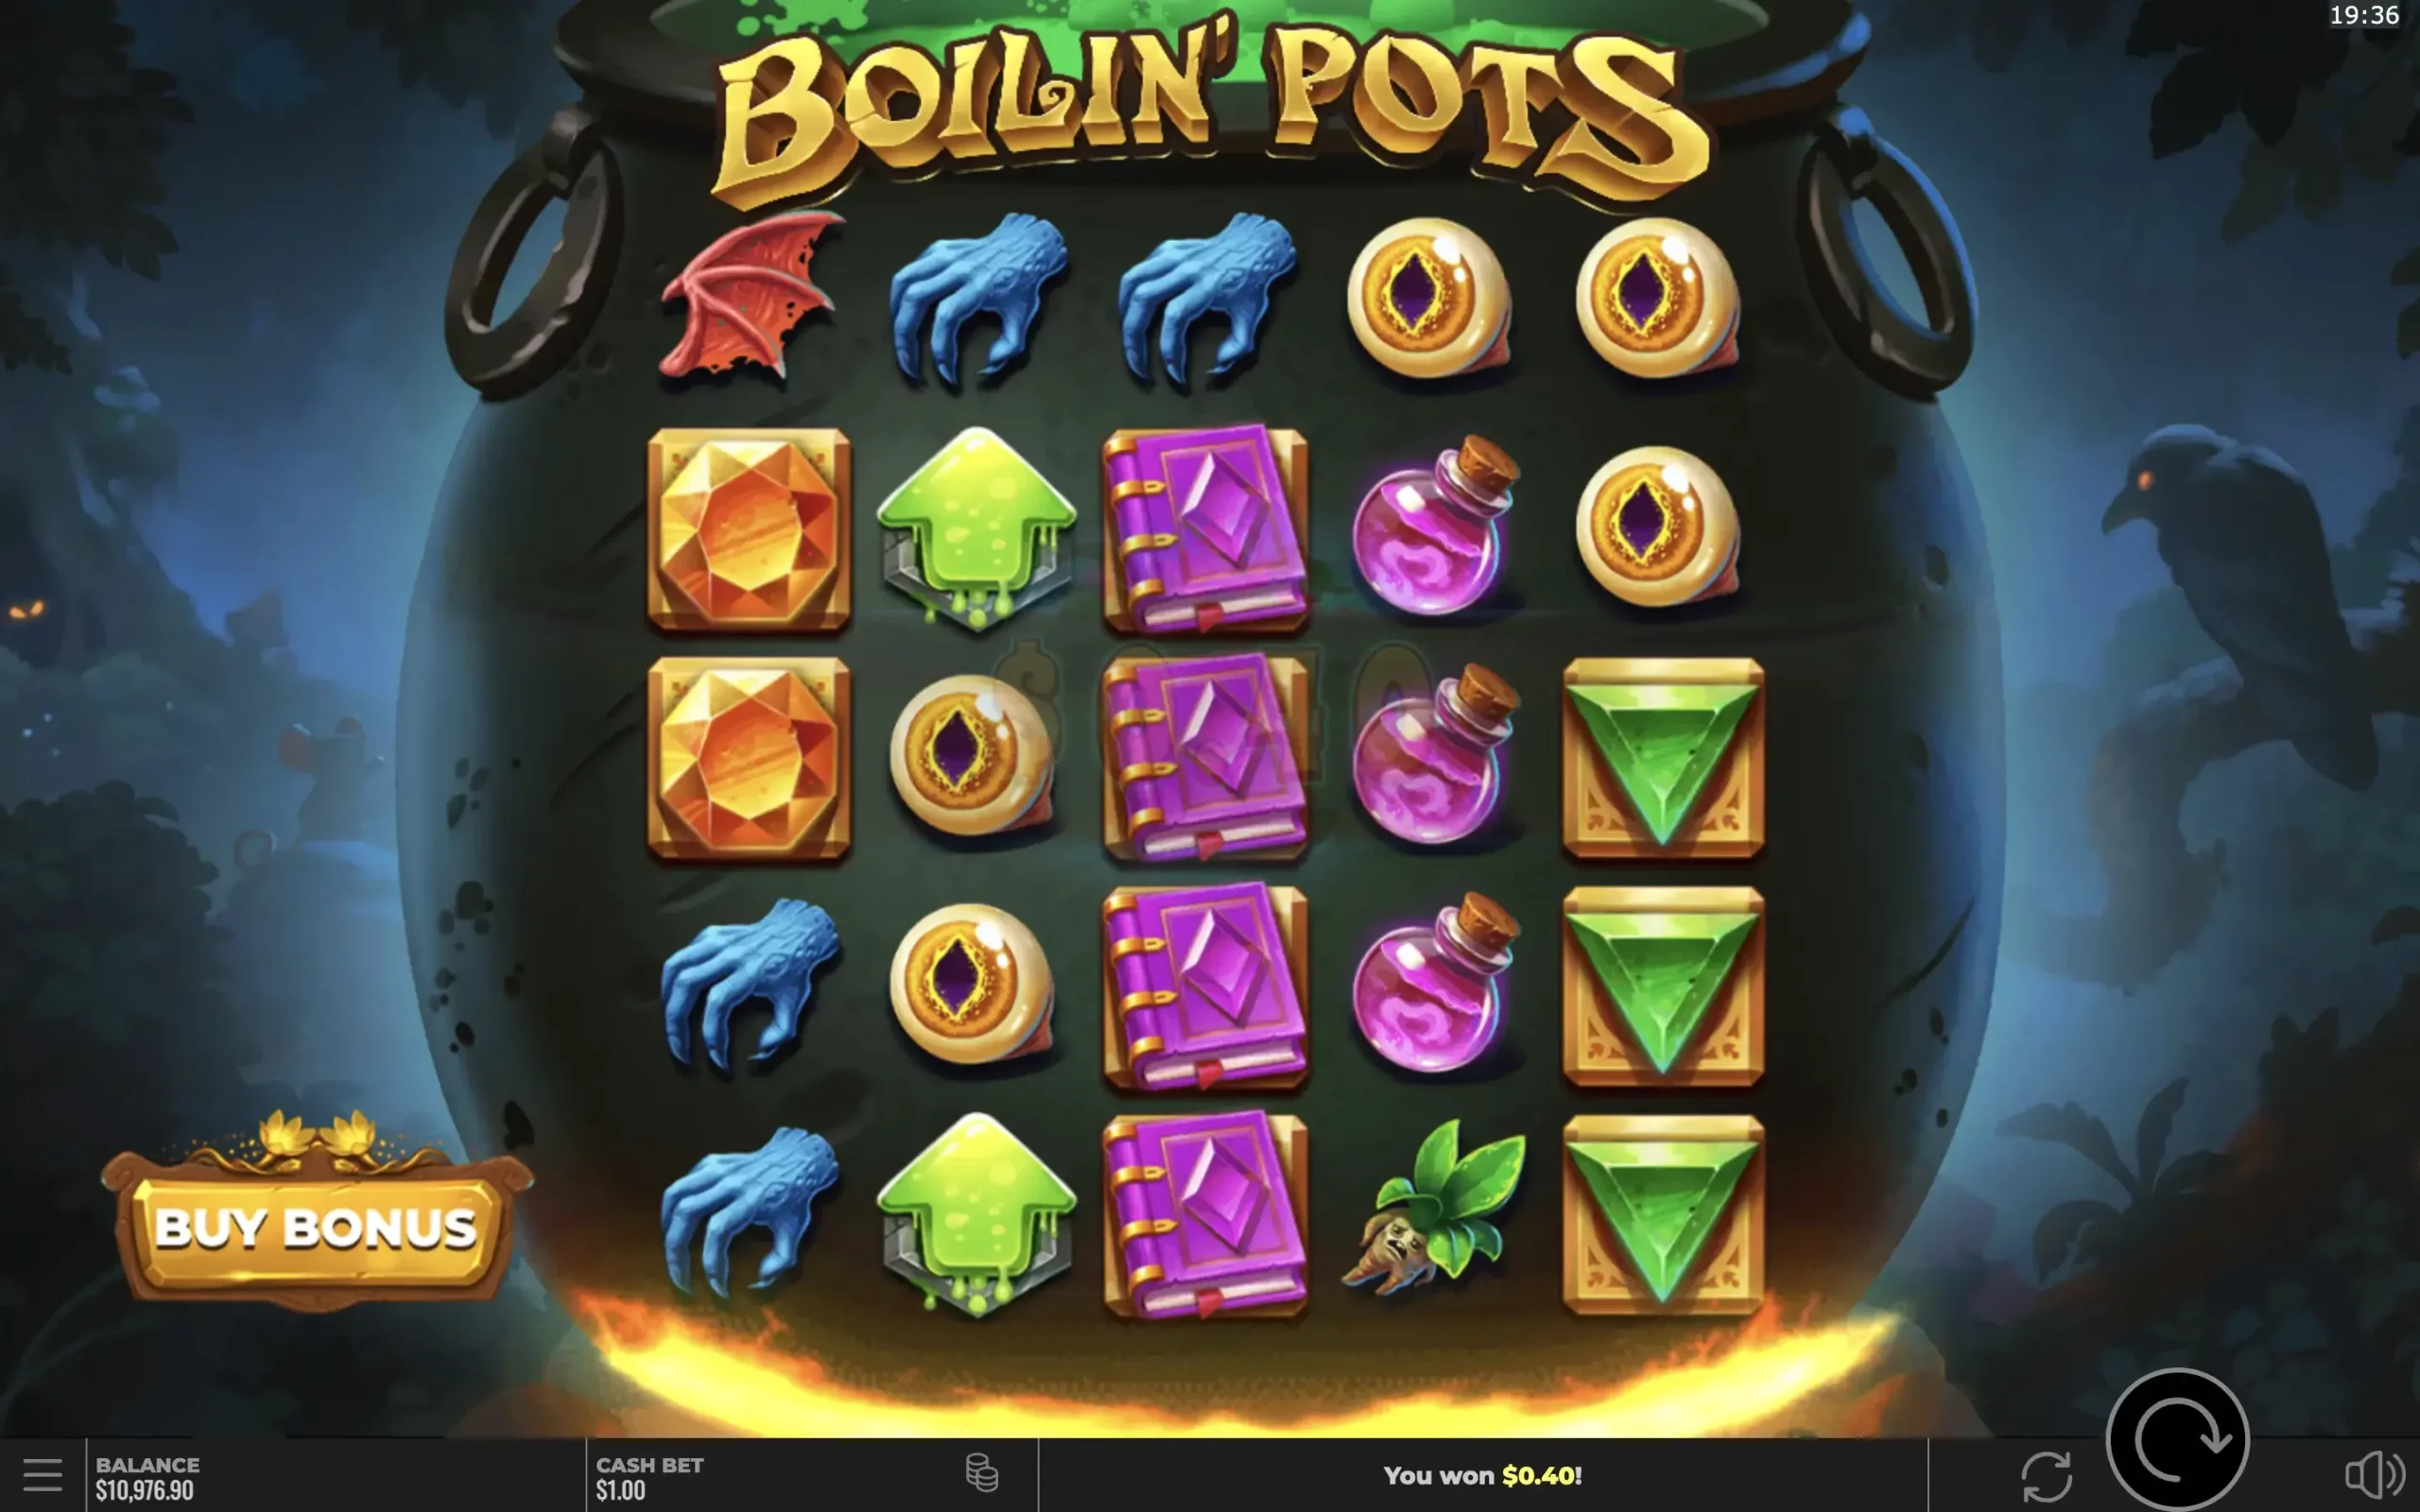 Boilin’ pots